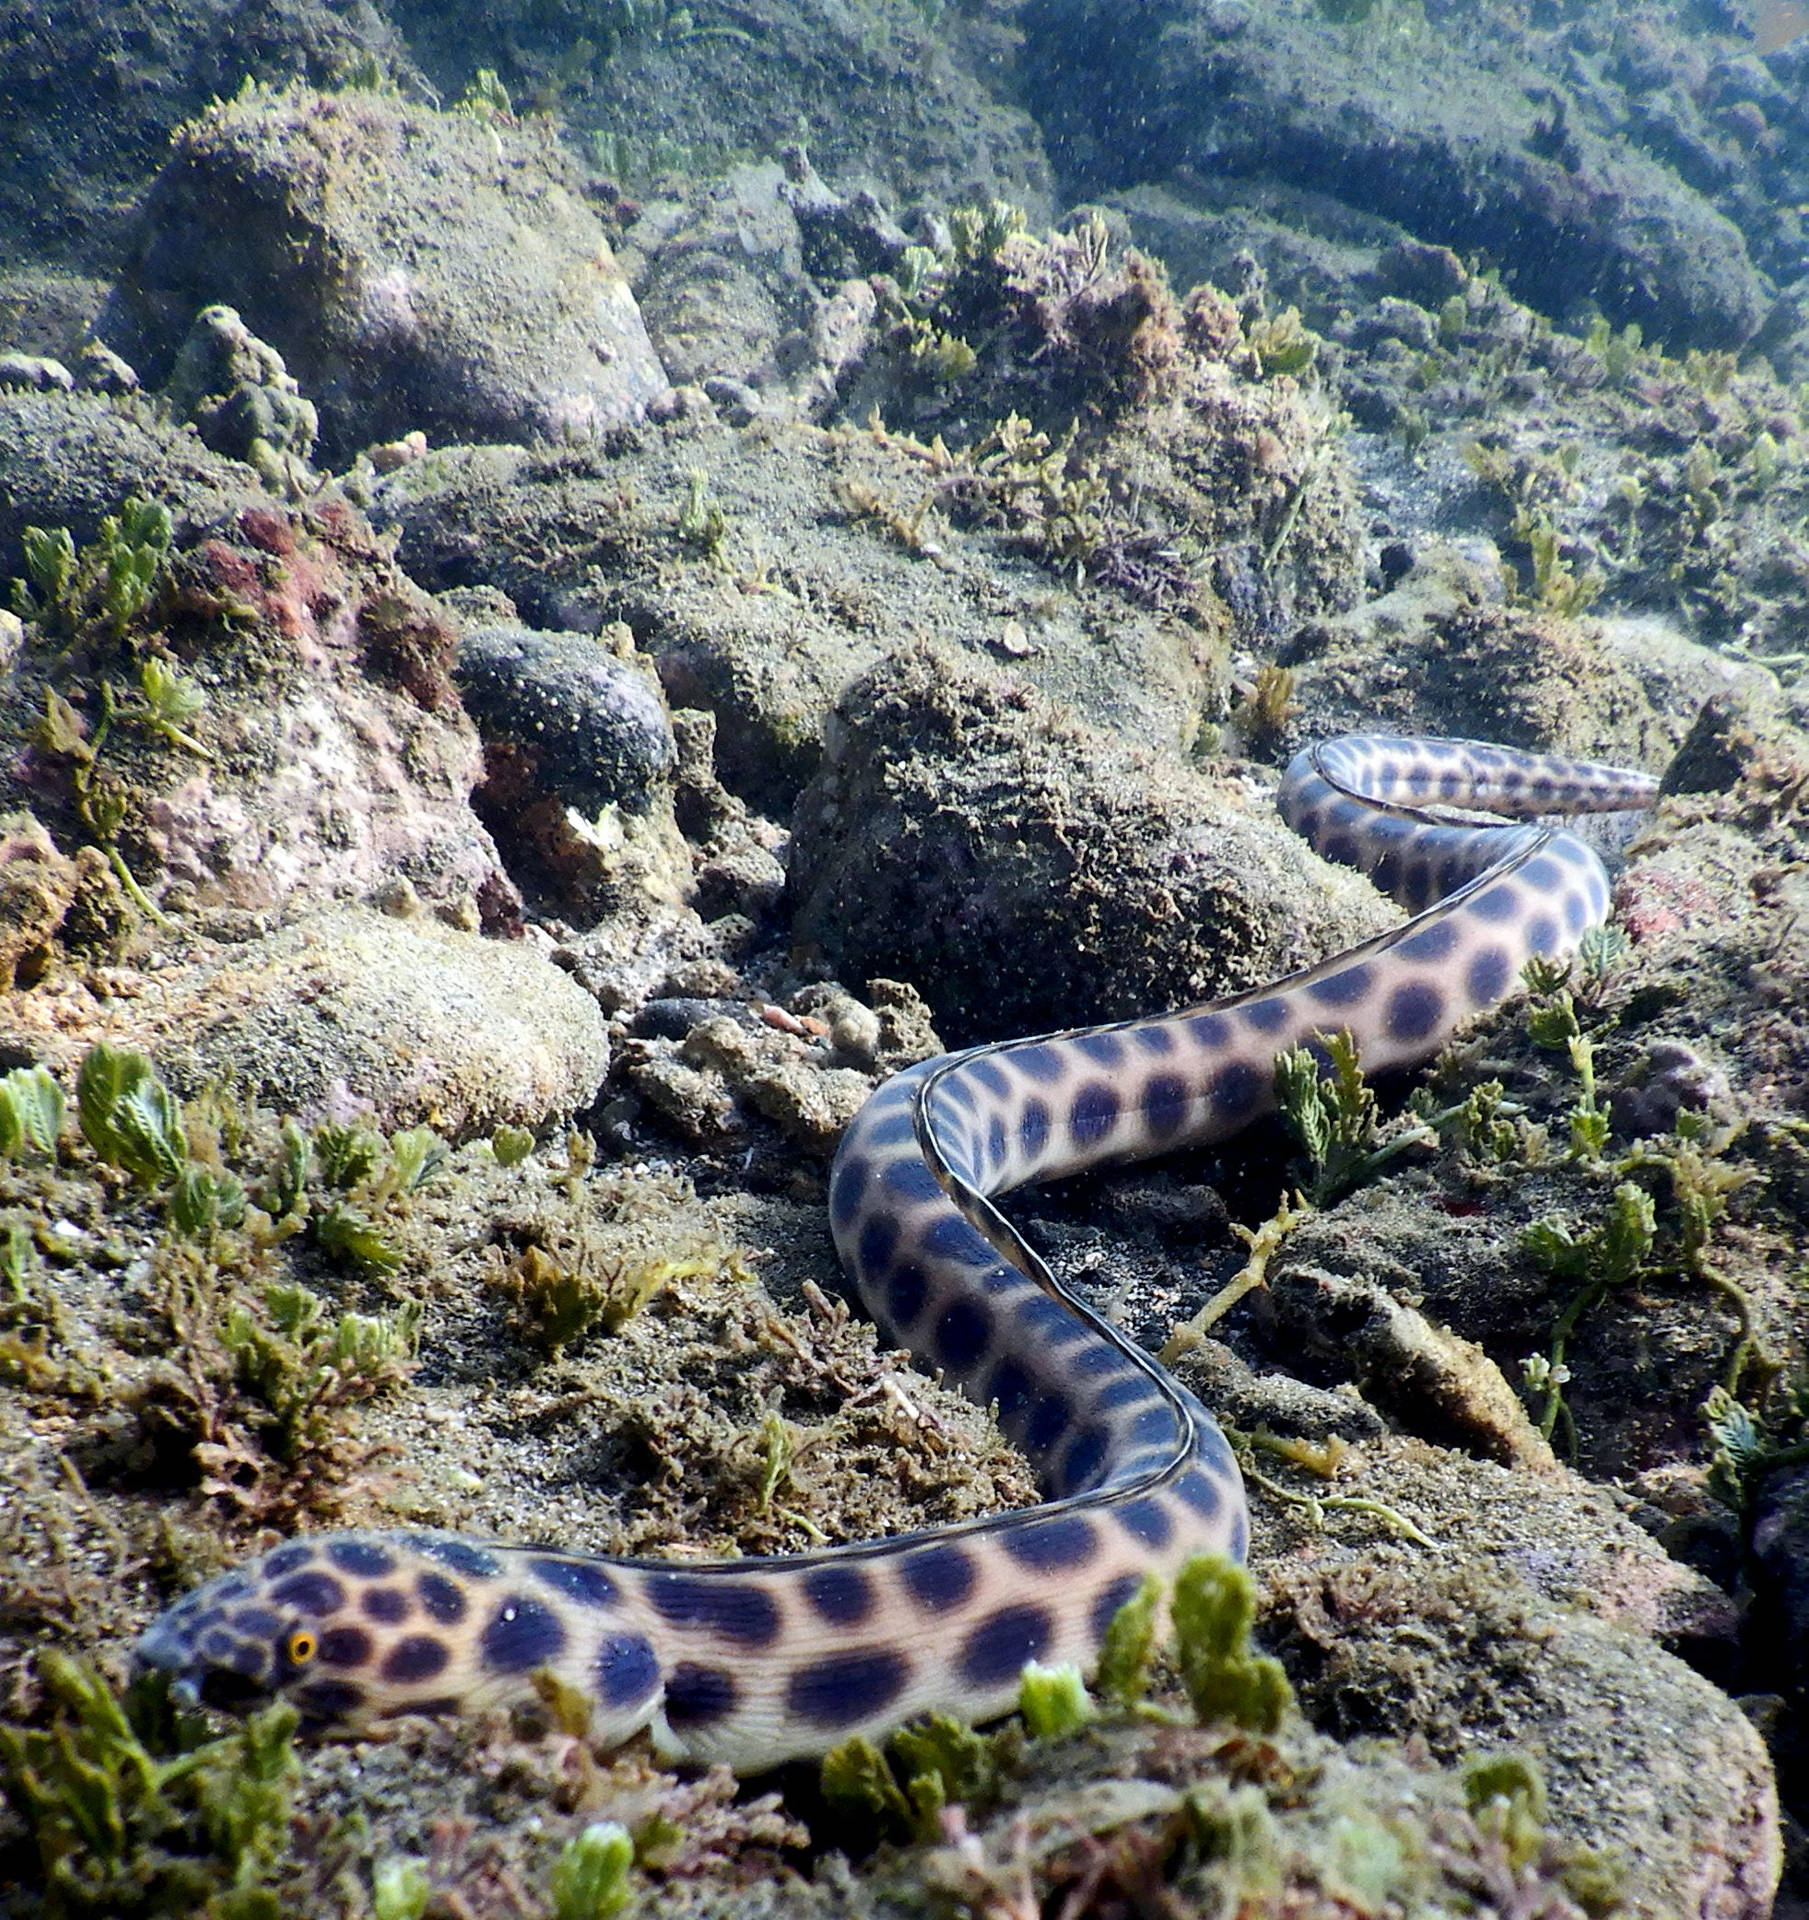 Serpientetigre Anguila Pez Arrastrándose En Arrecifes Fondo de pantalla